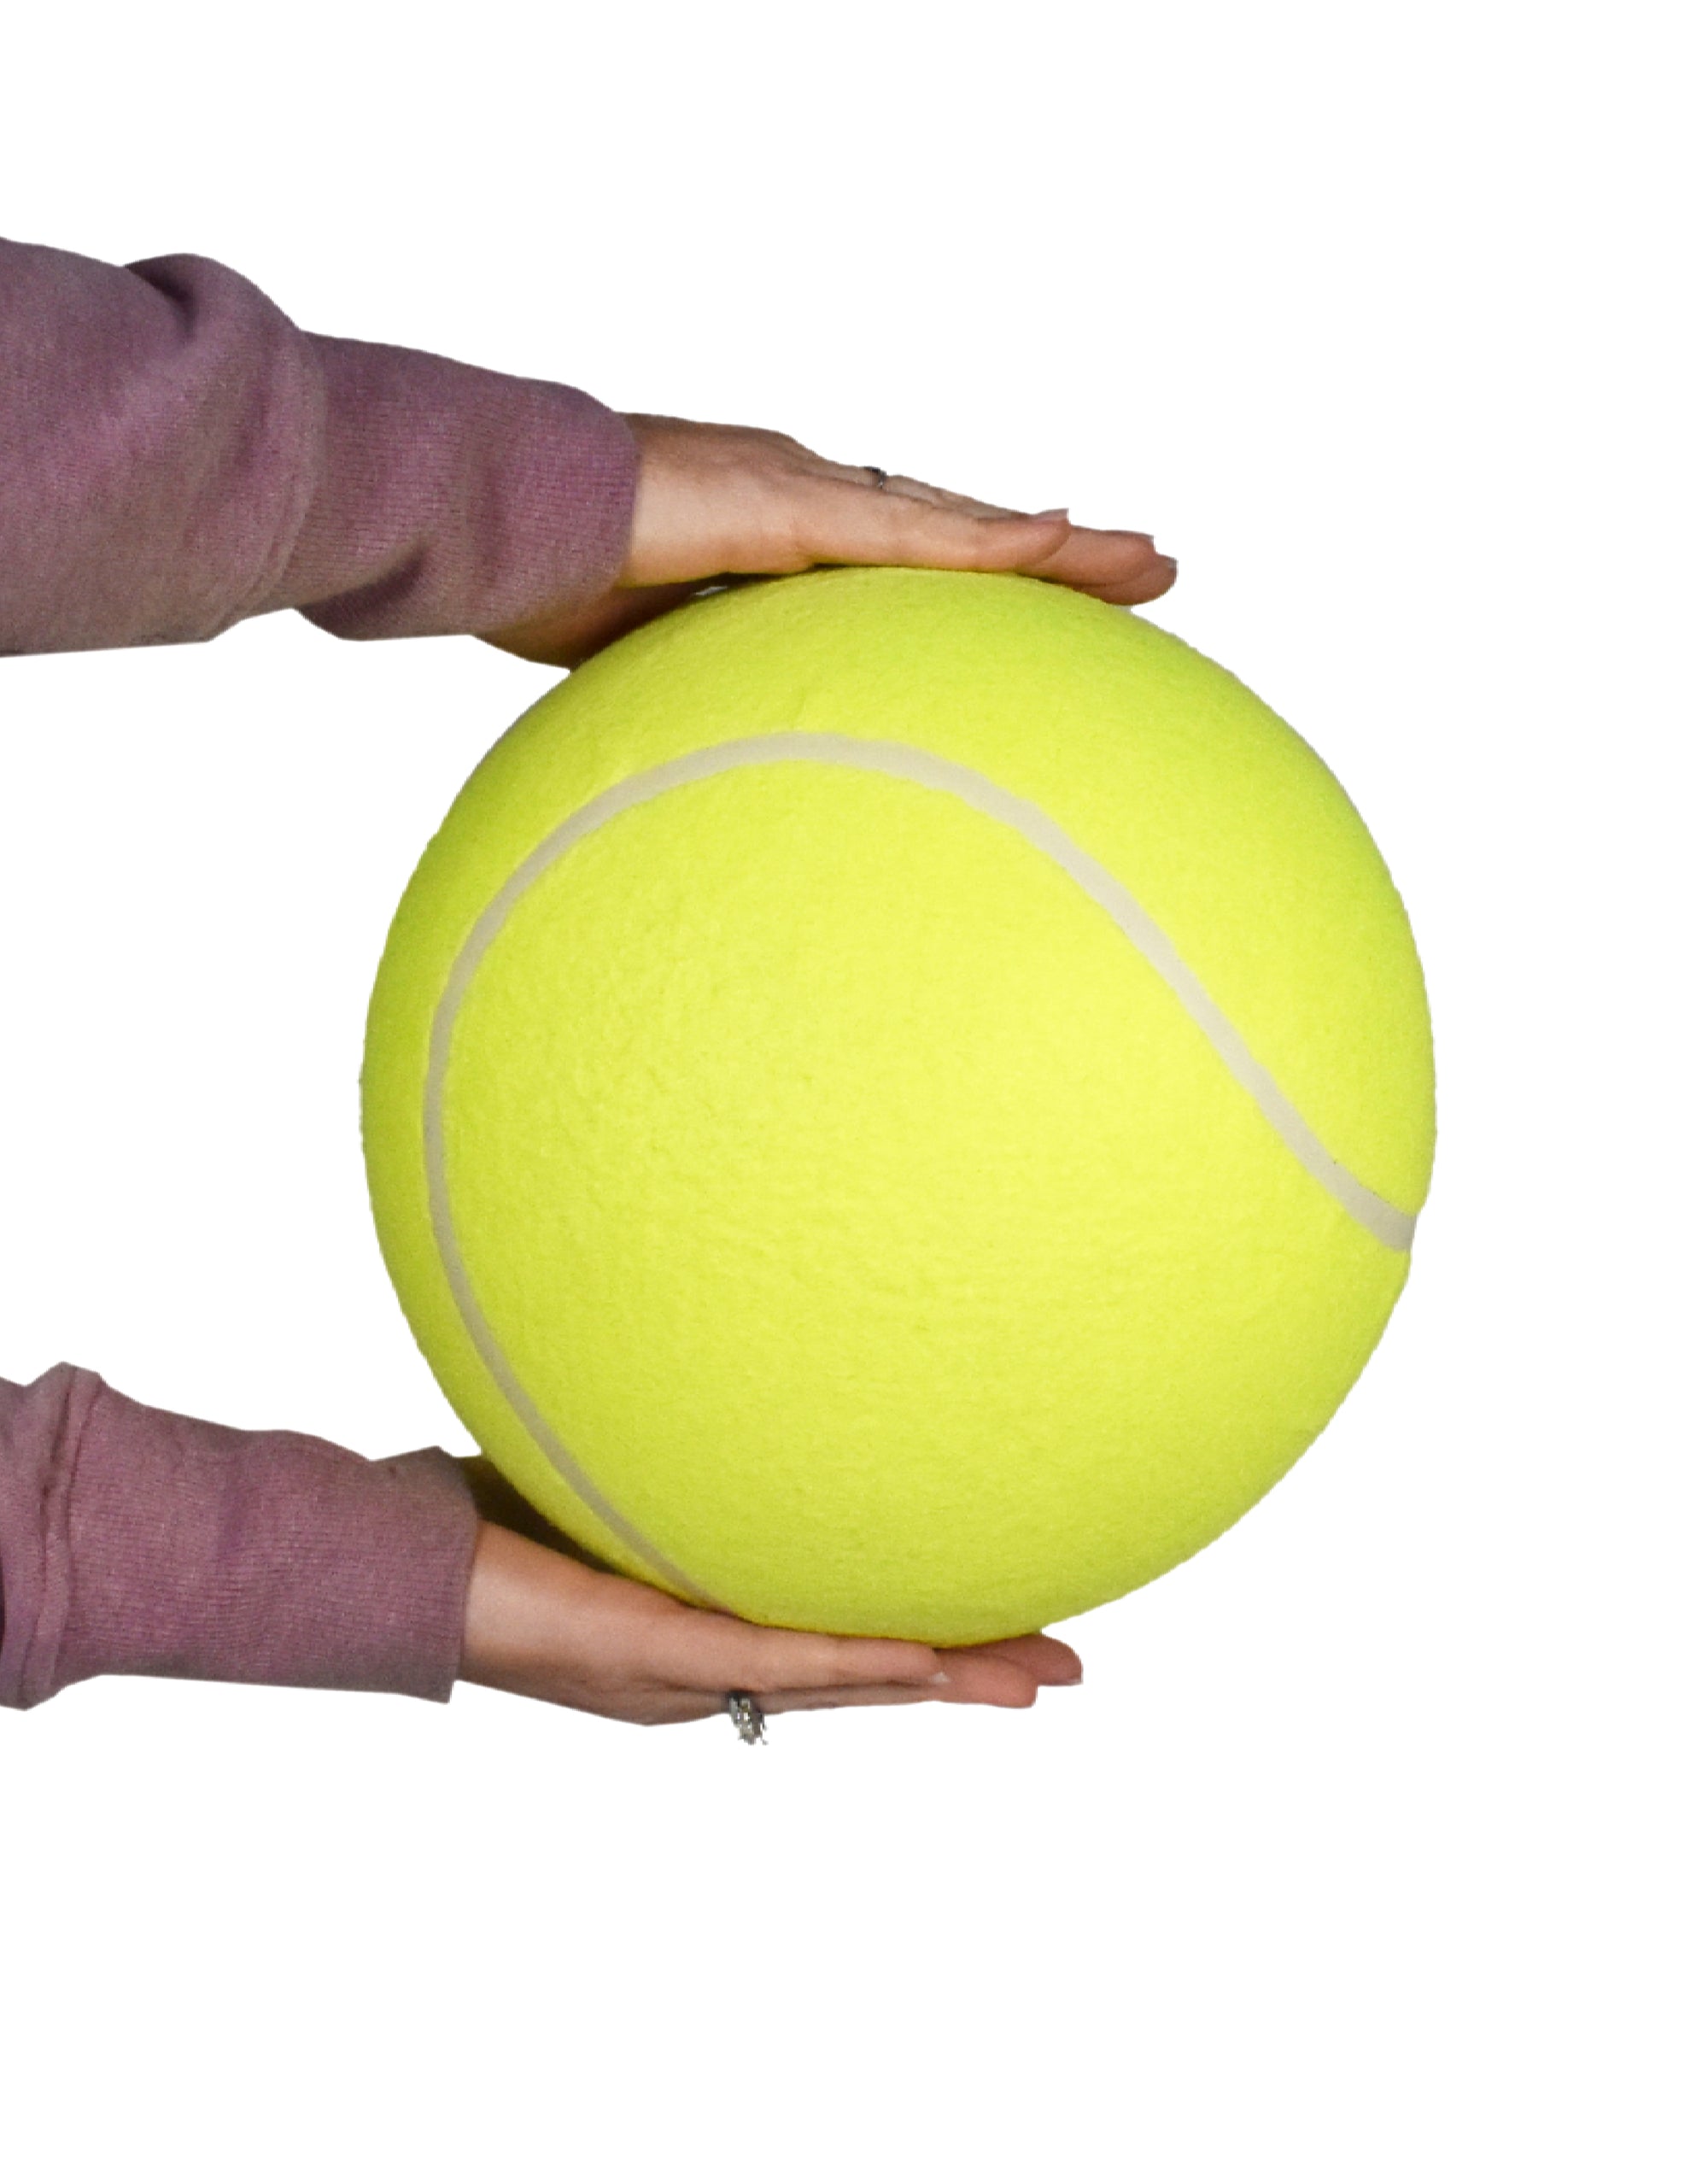 WORLD'S SMALLEST TENNIS BALL